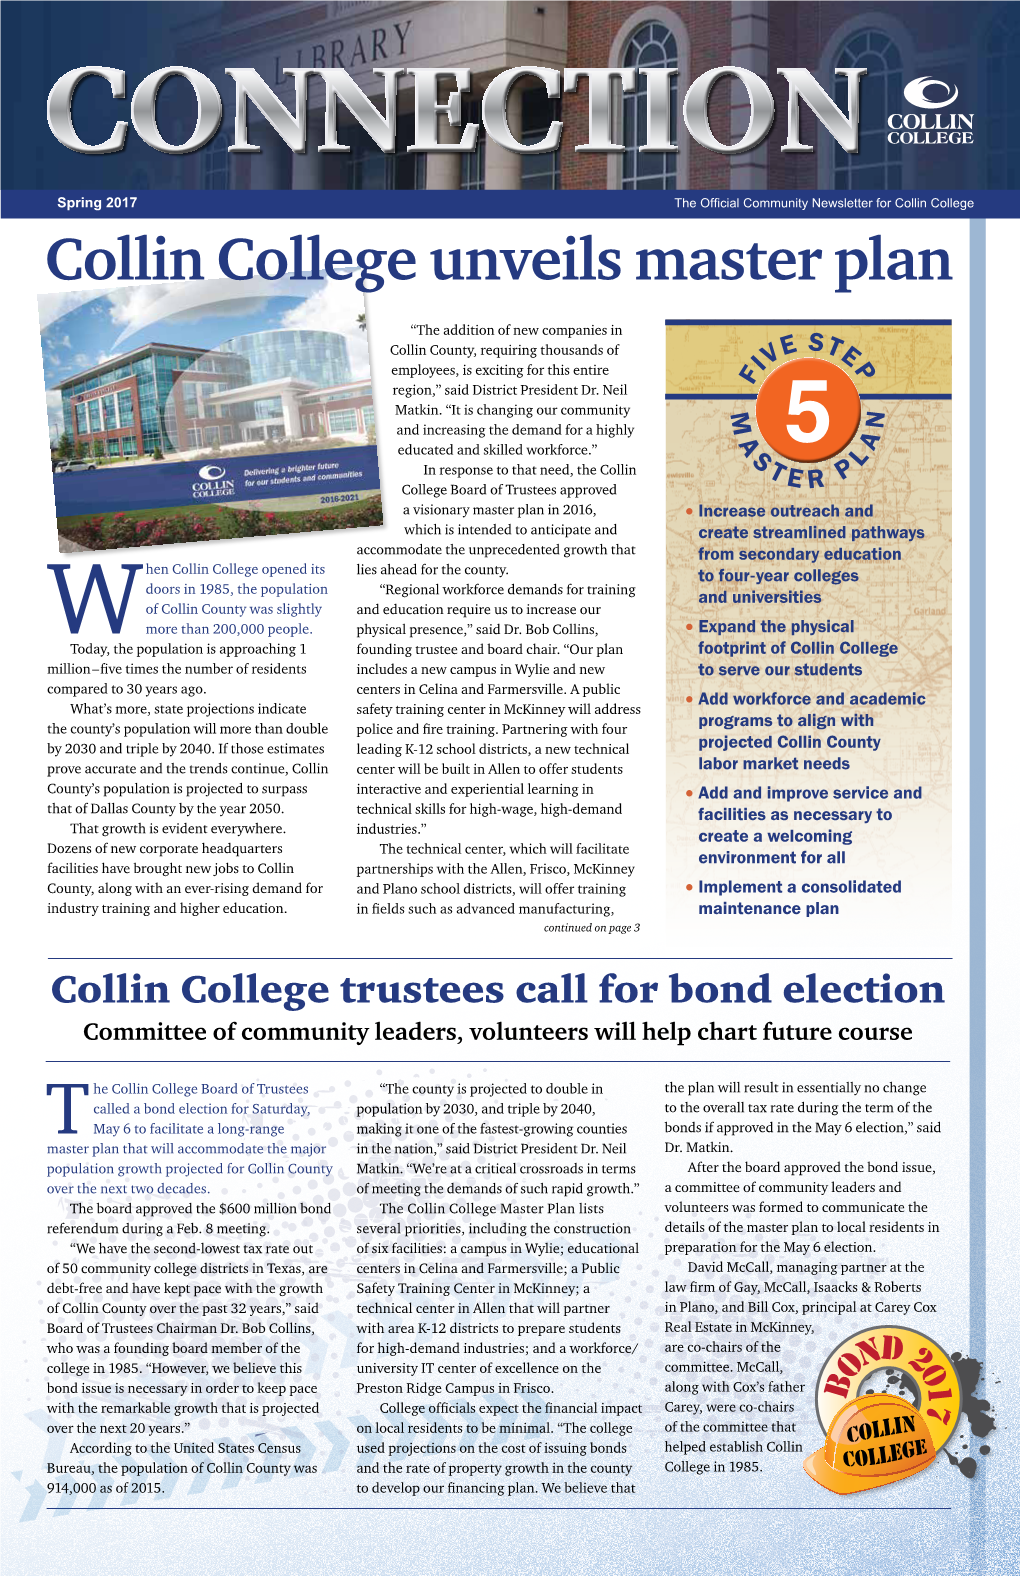 Collin College Unveils Master Plan